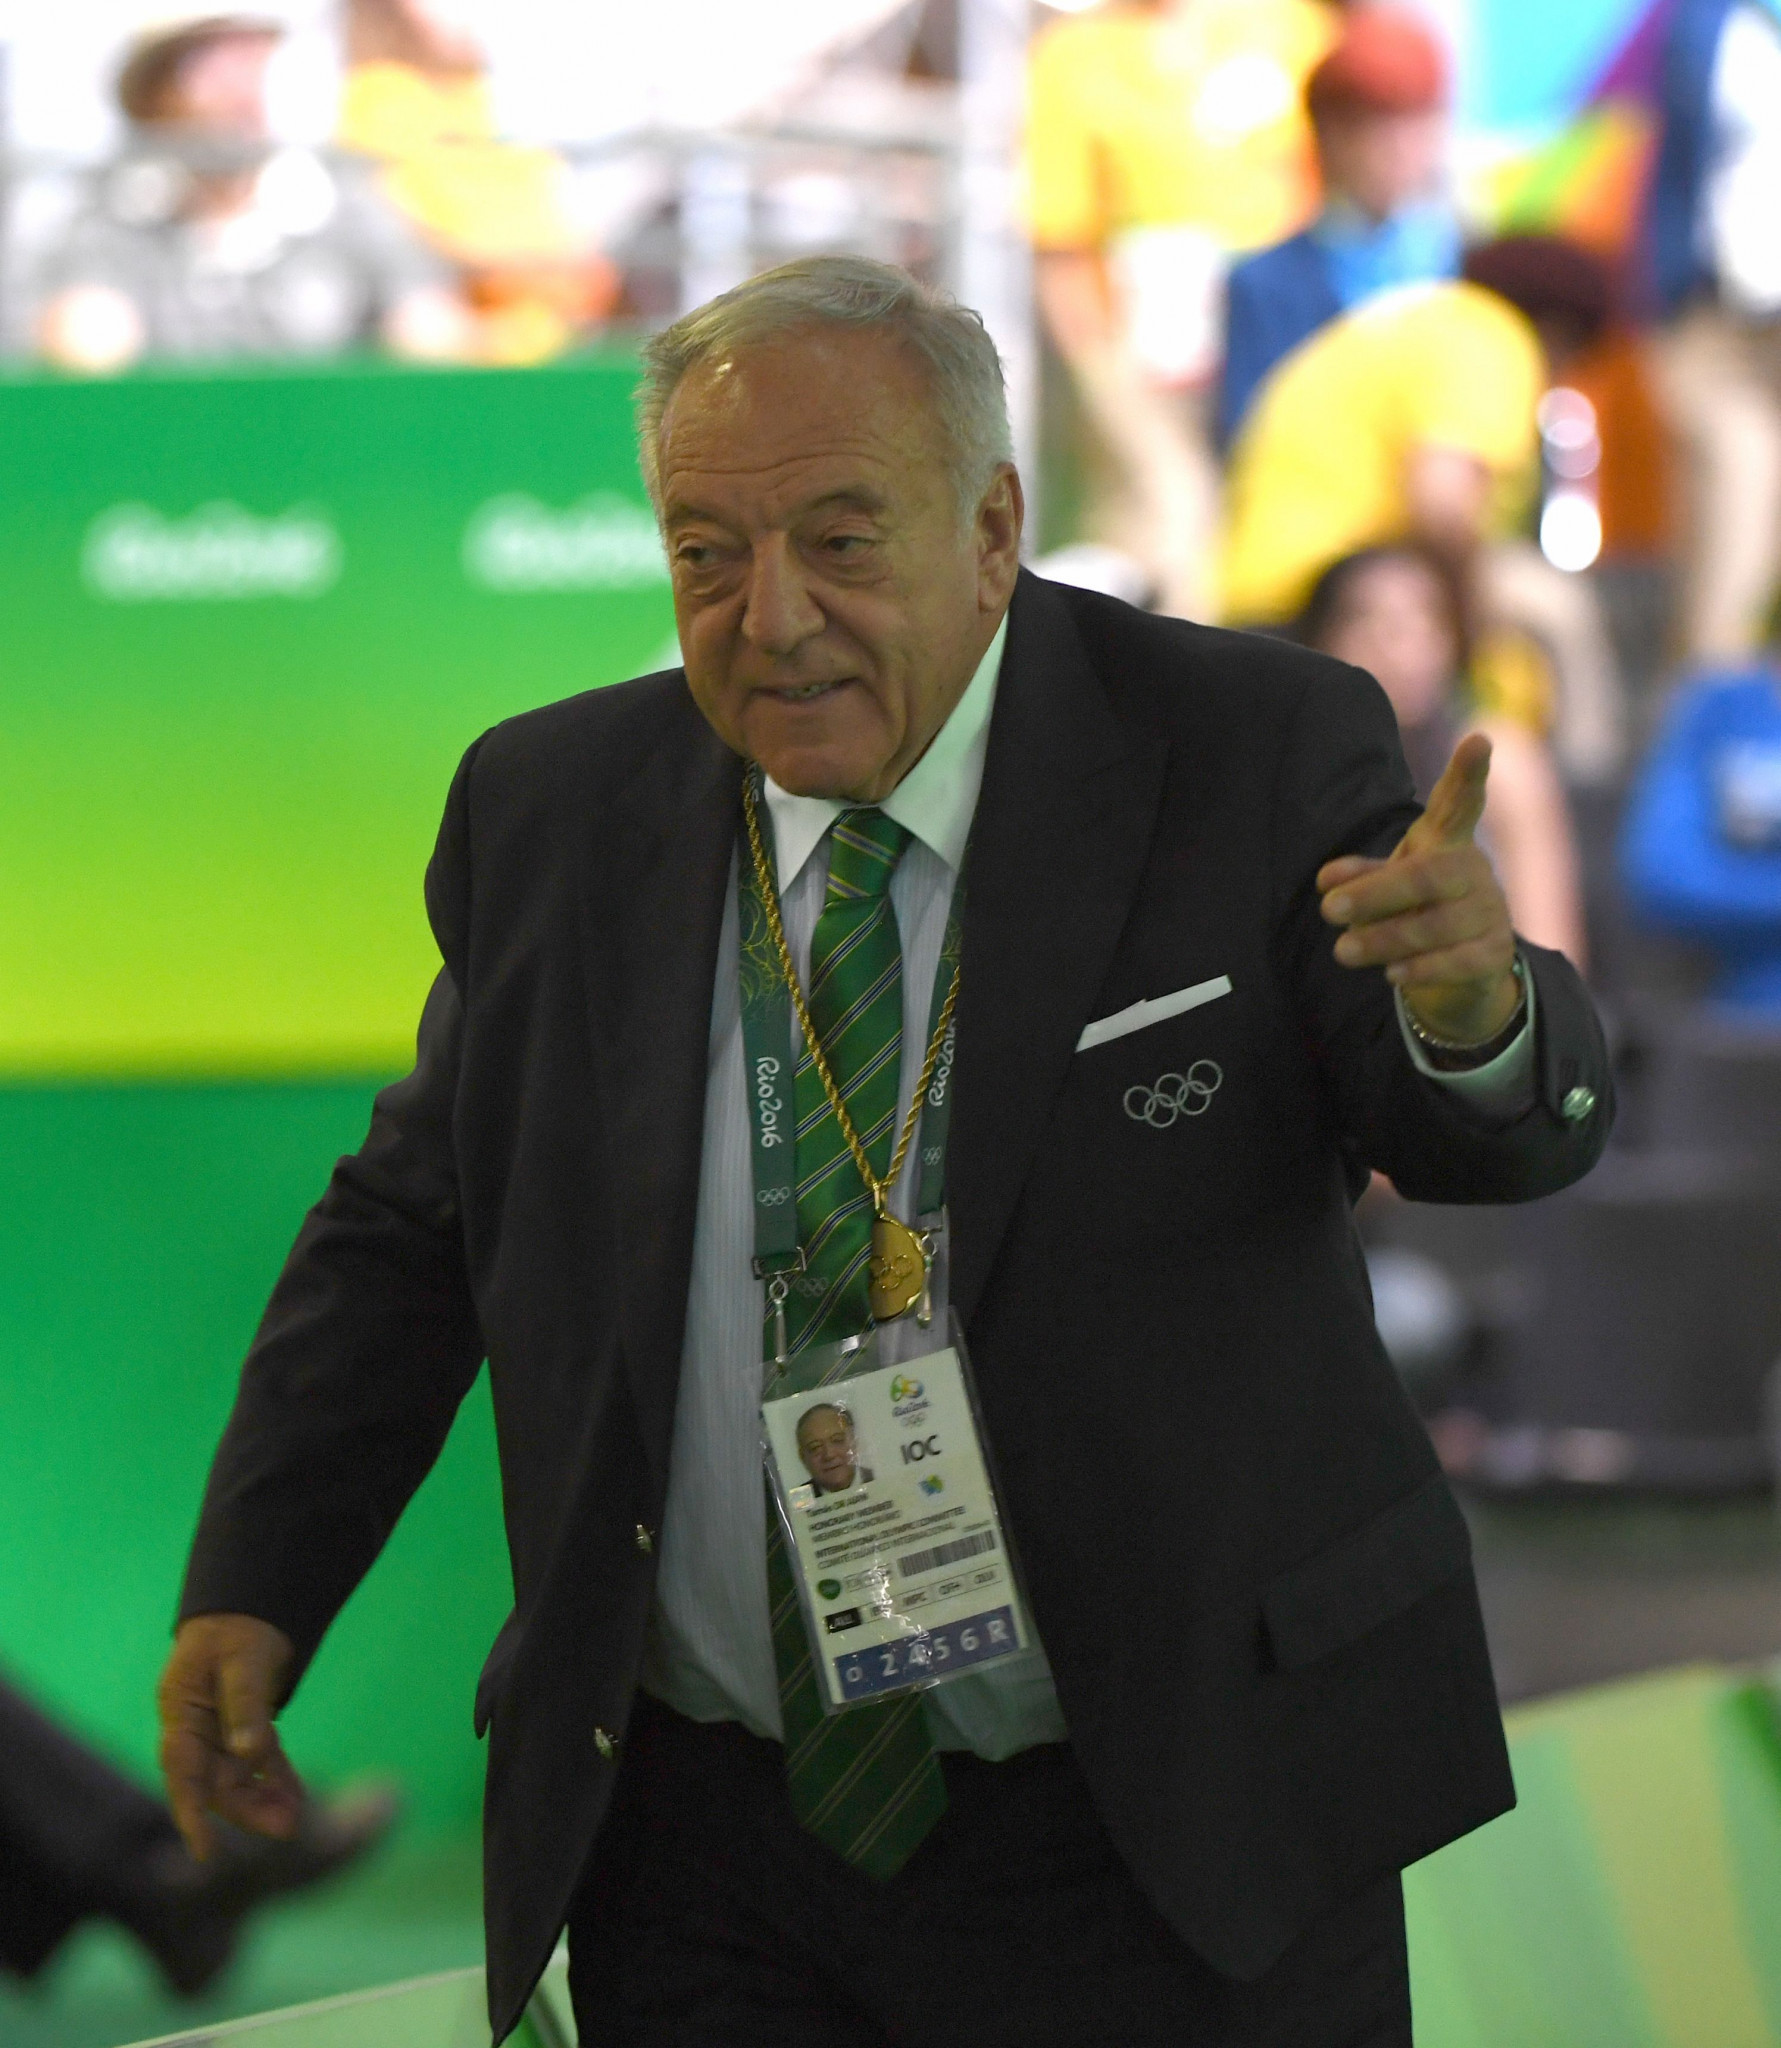 Les infractions de dopage sanctionnées aujourd'hui ont eu lieu alors que Tamás Aján était président de l'IWF ©Getty Images